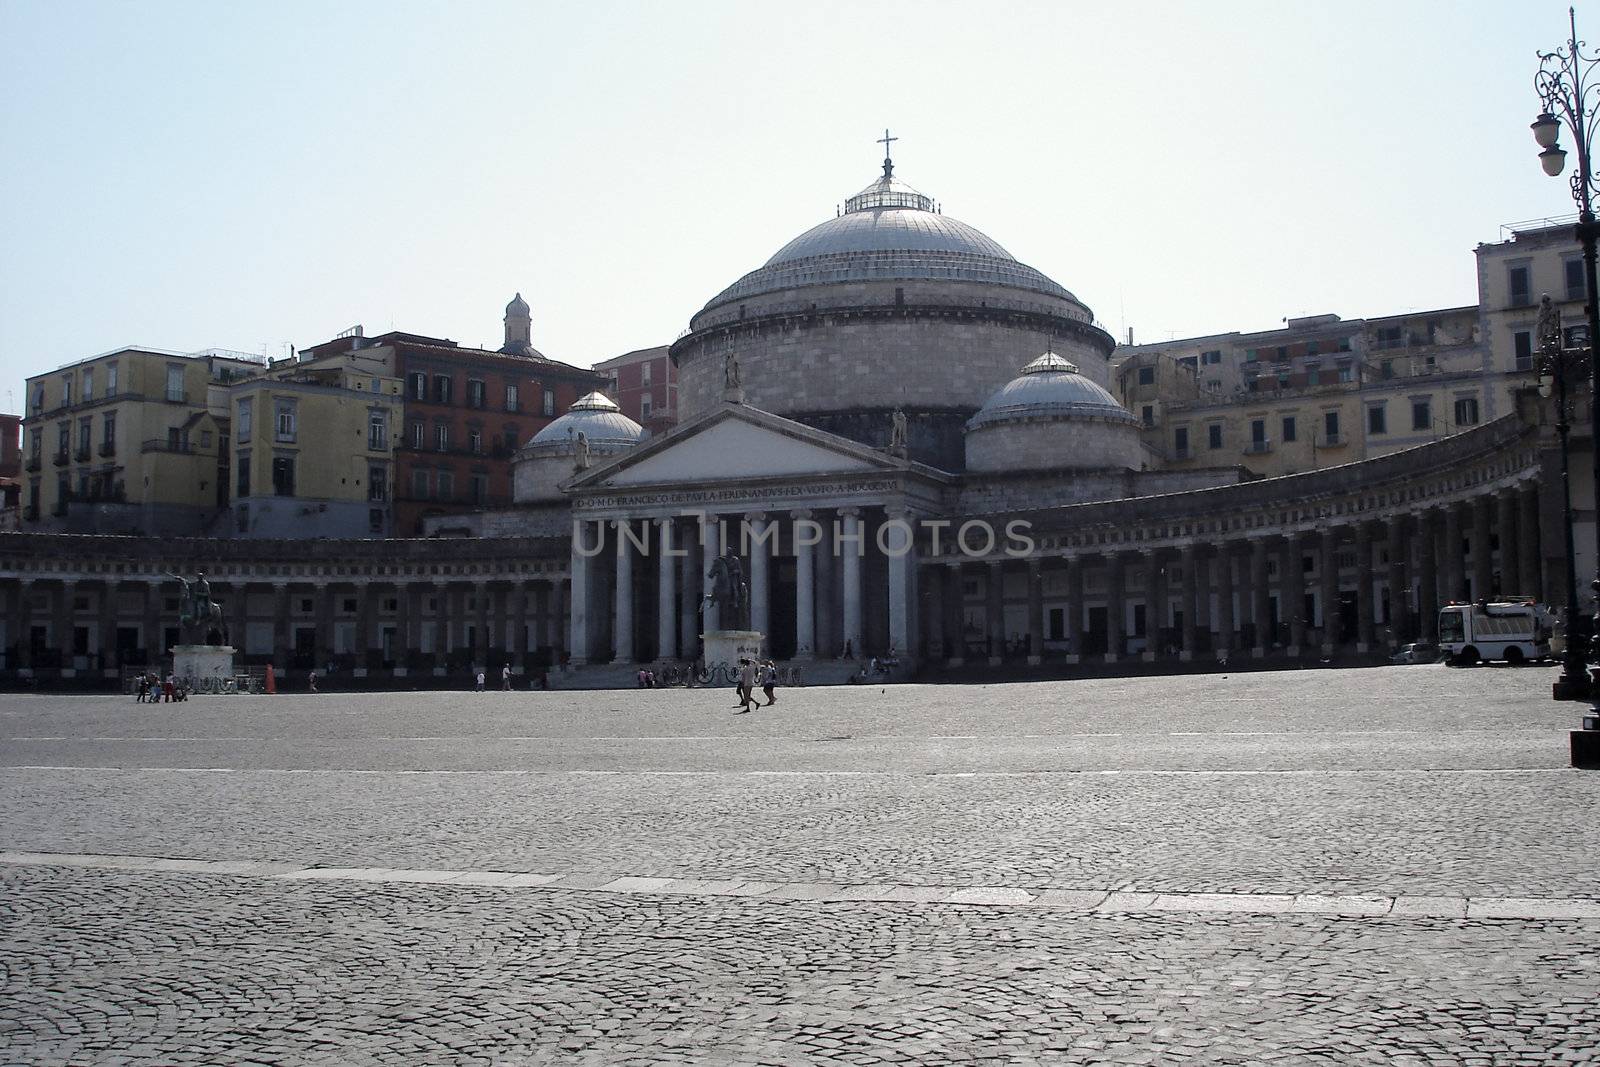 The 'Chiesa di san Francesco di Paola' at the 'Piazza del Plebiscito' in Naples, Italy.